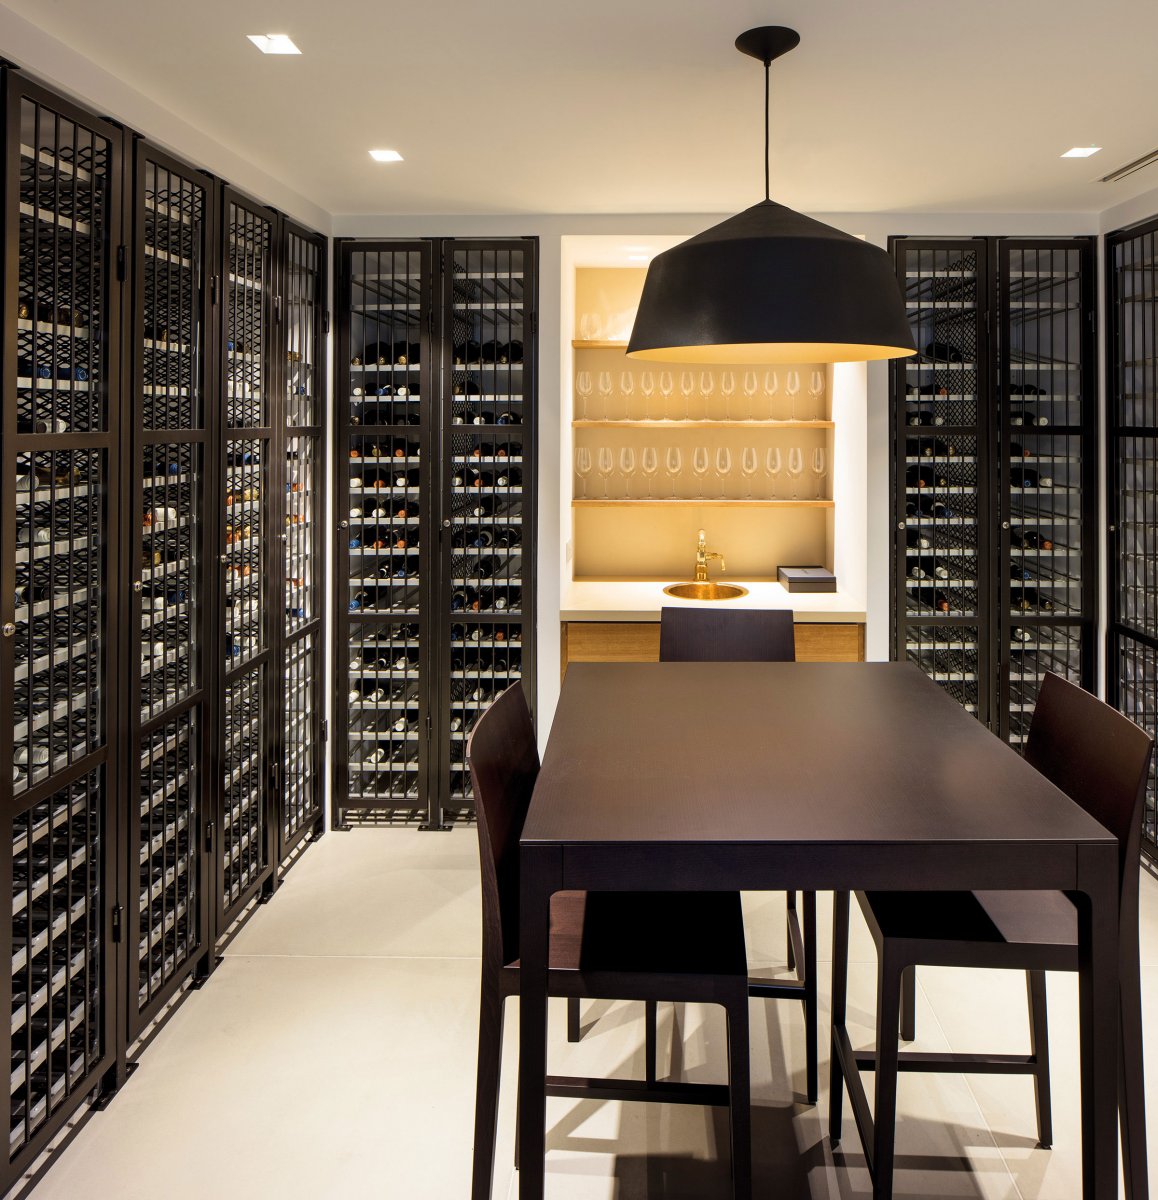 A private wine cellar